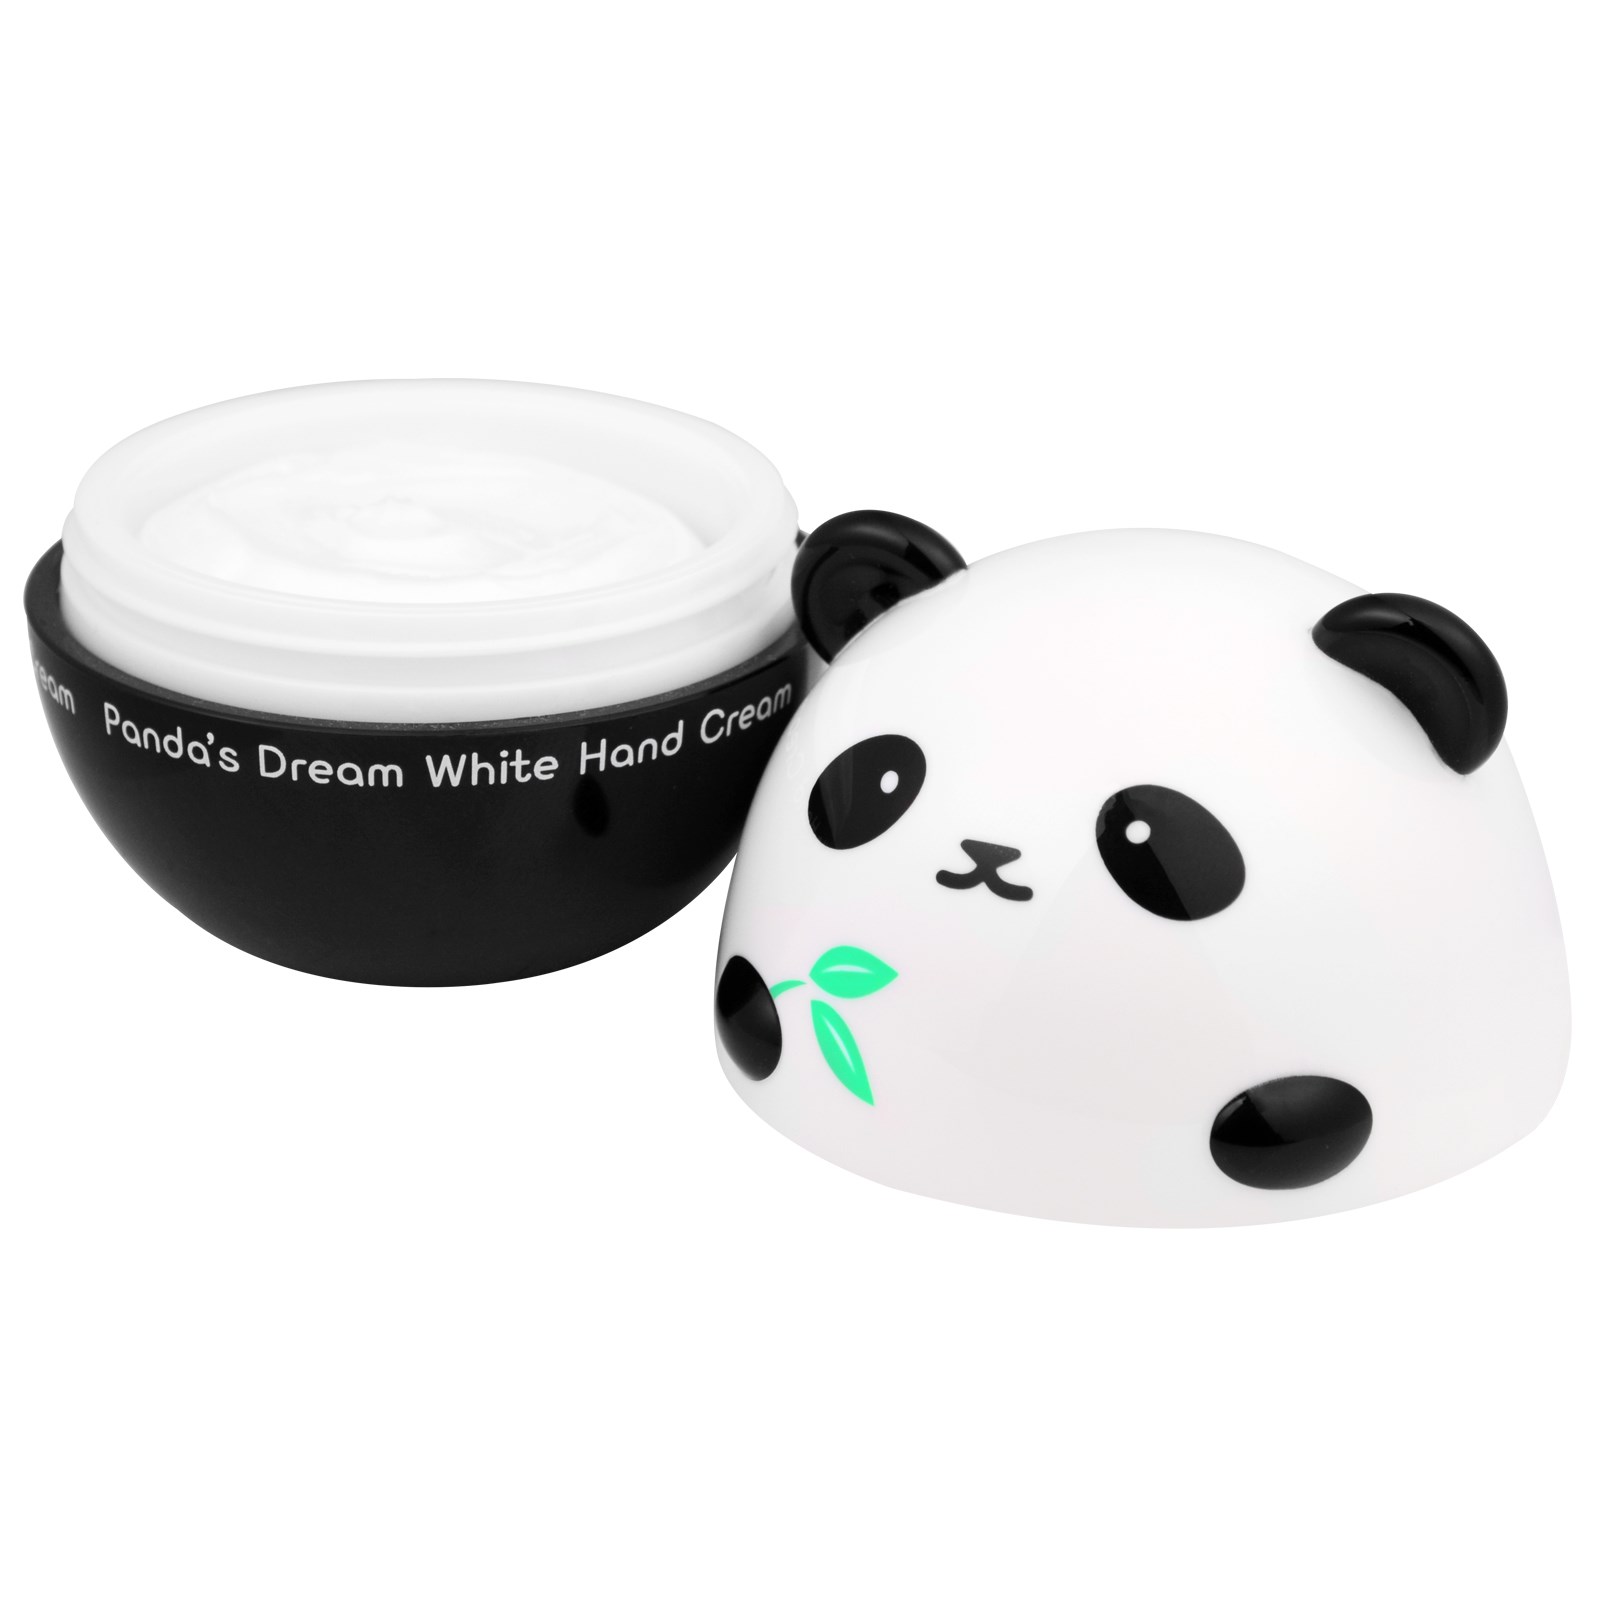 Panda's Dream White Hand Cream - Крем для рук осветляющий